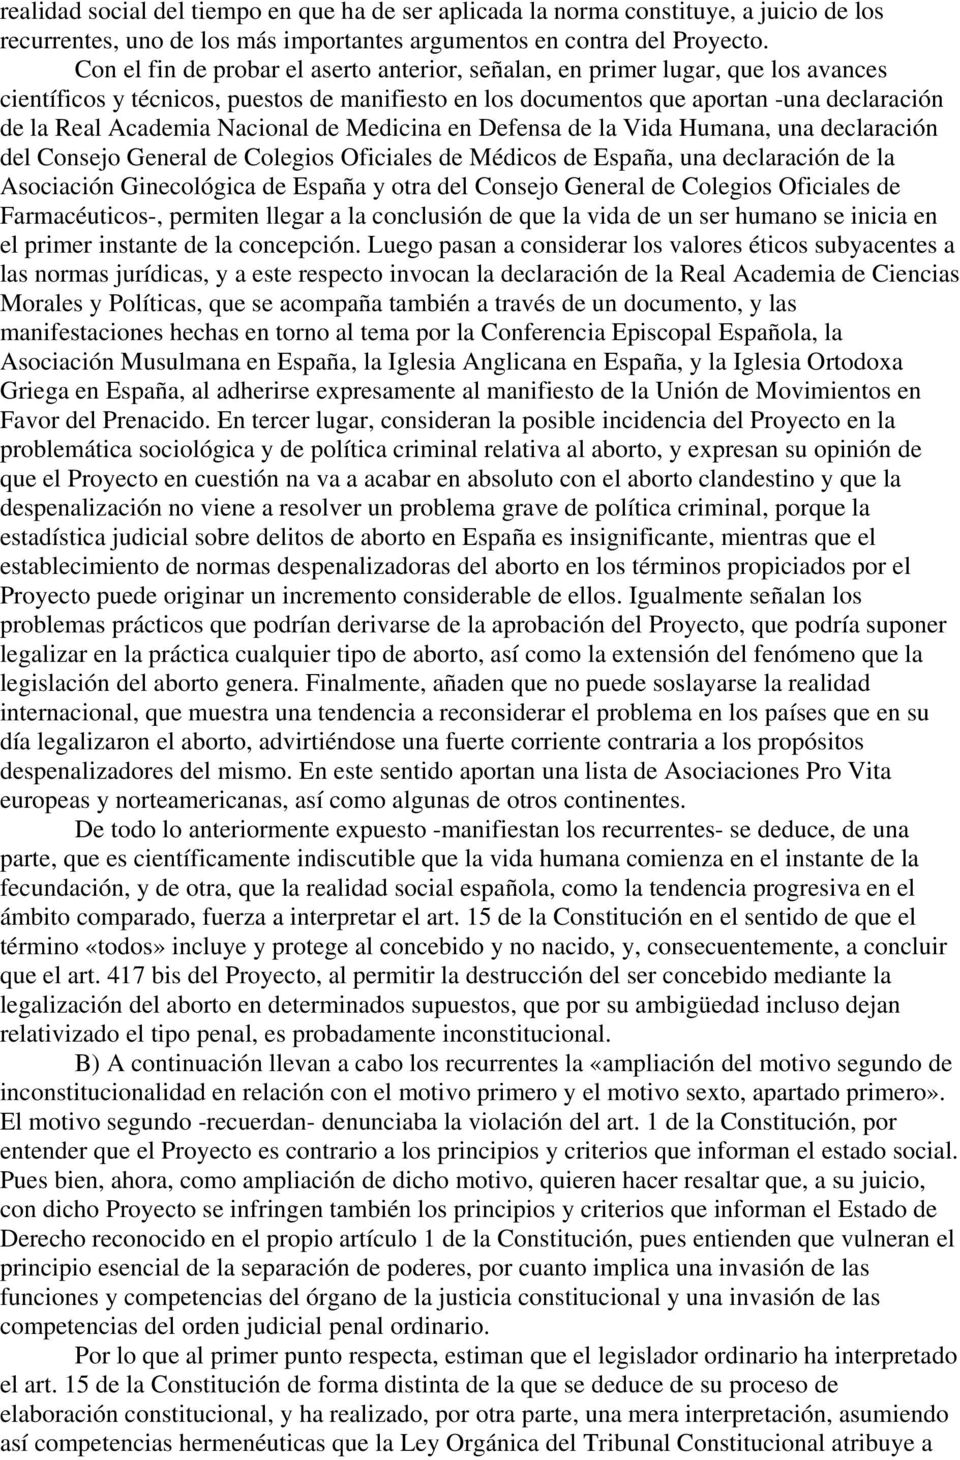 Nacional de Medicina en Defensa de la Vida Humana, una declaración del Consejo General de Colegios Oficiales de Médicos de España, una declaración de la Asociación Ginecológica de España y otra del